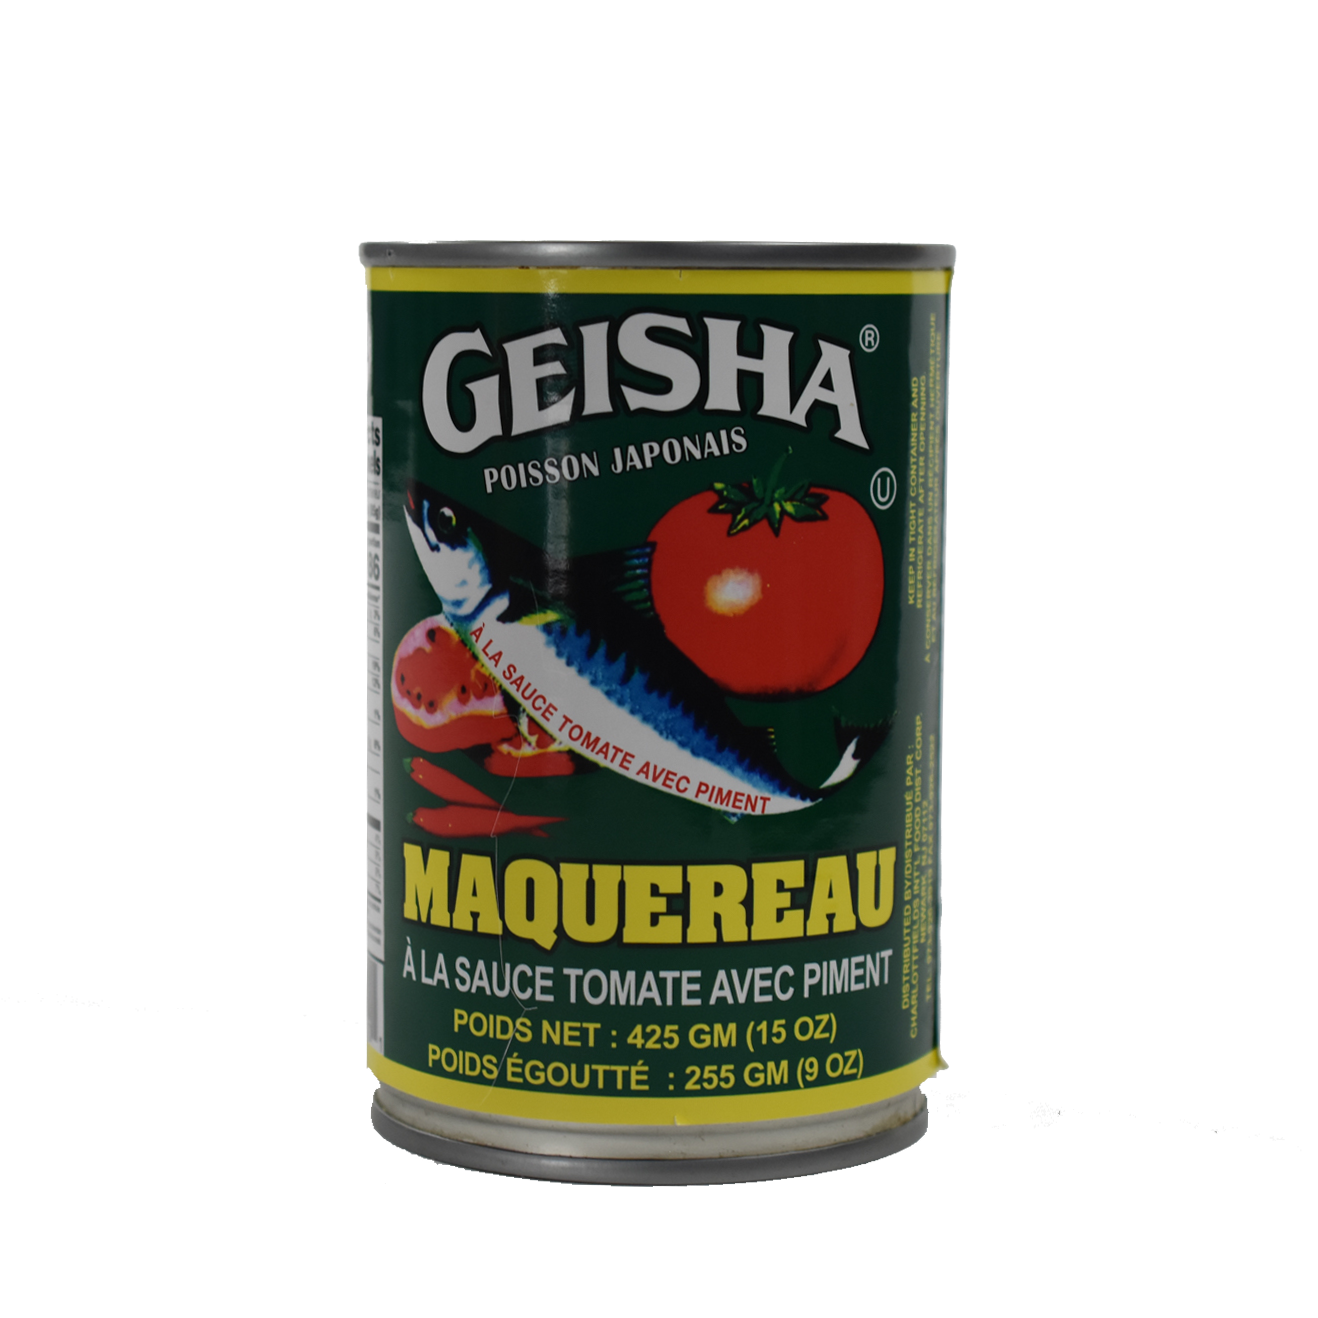 Geisha Mackerel in Tomato Sauce 5.5oz - Break Stop